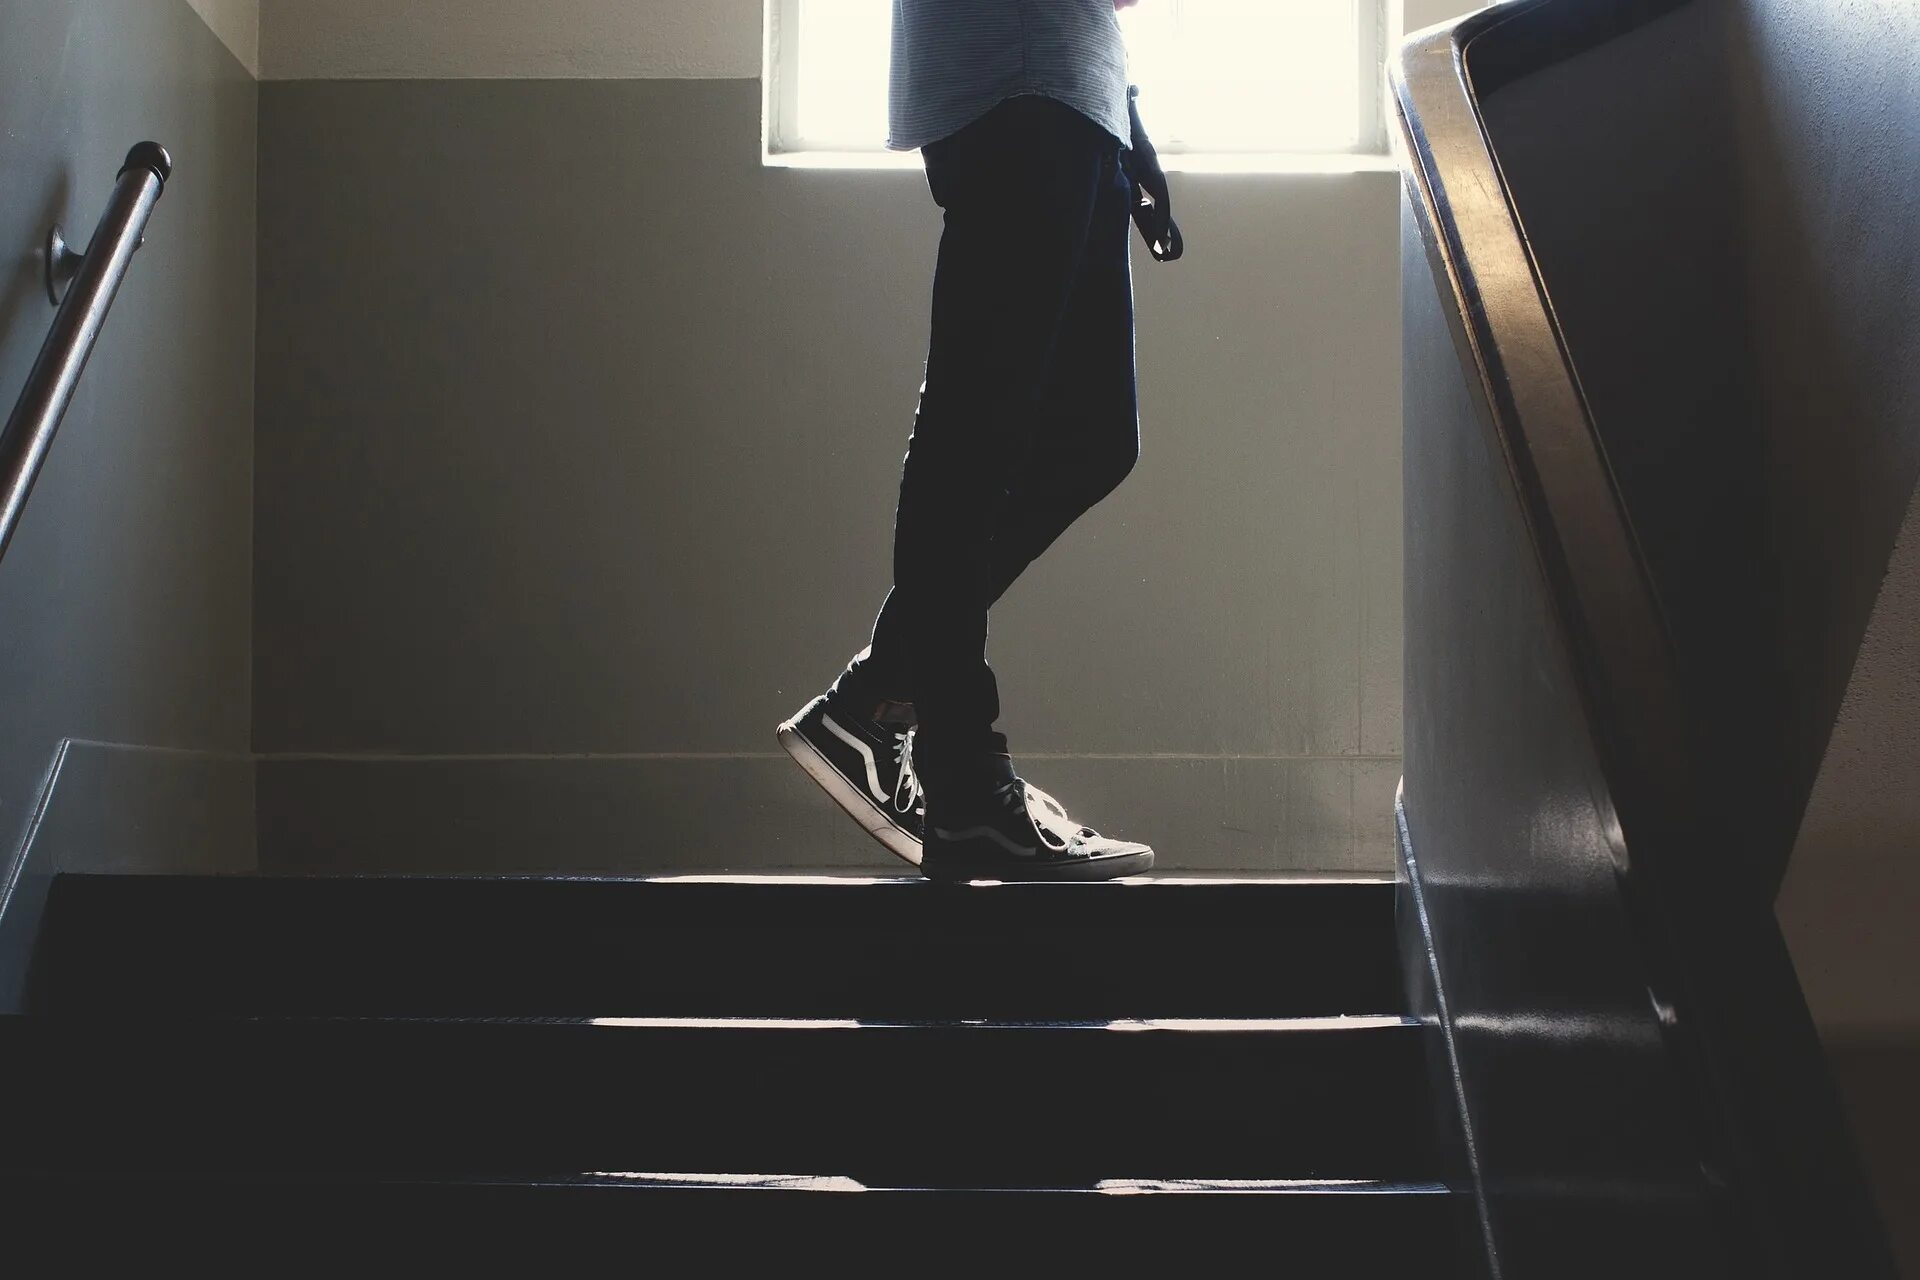 Подниматься по лестнице. Поднимается по лестнице. Парень спускается по лестнице. Человек на лестнице. Человек на ступеньках.